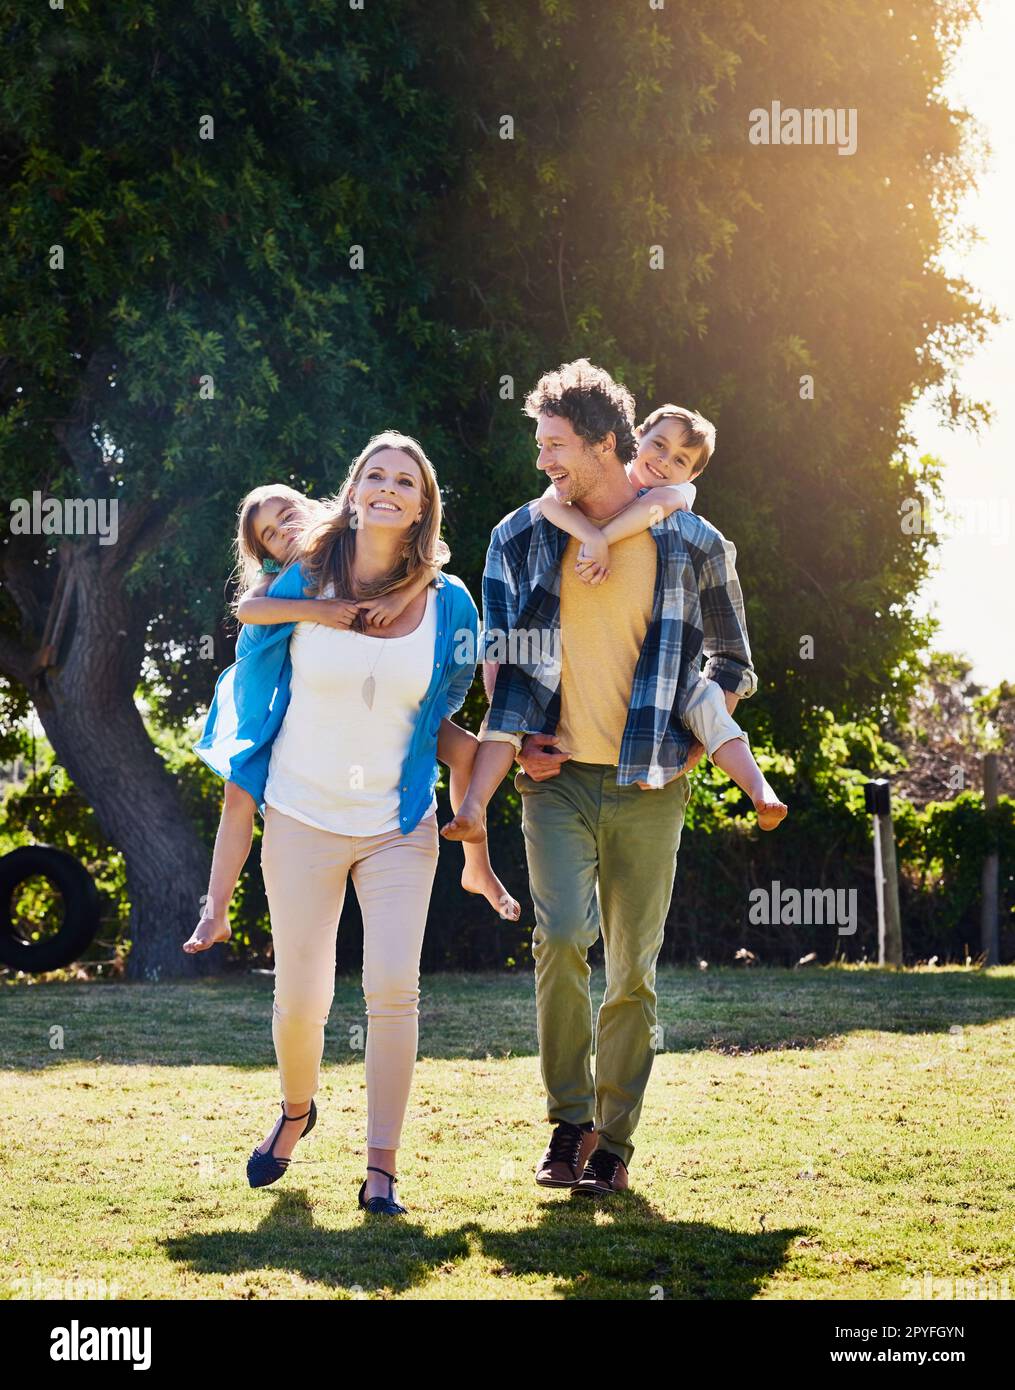 Familie - Liebe, die am lautesten spricht. Eine glückliche Familie, die Zeit zusammen im Freien verbringt. Stockfoto